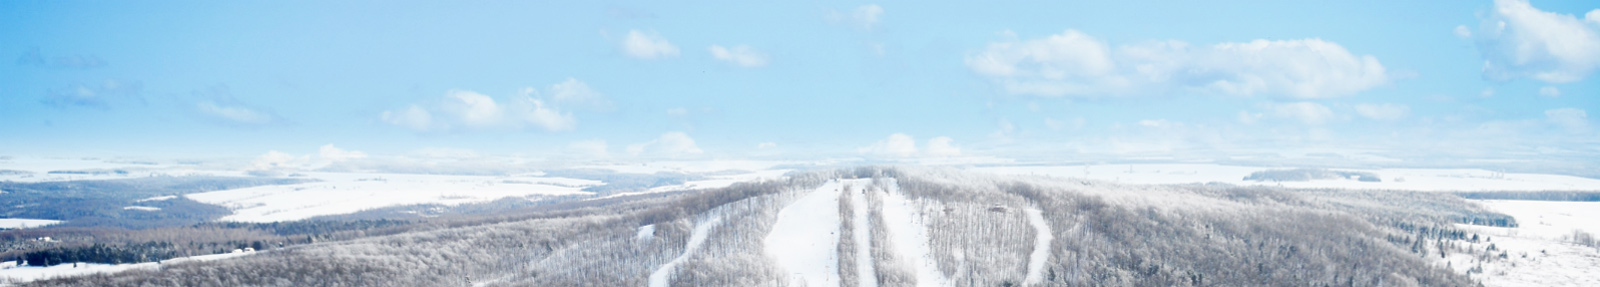 L’industrie du ski salue le plan pour soutenir le développement durable des montagnes